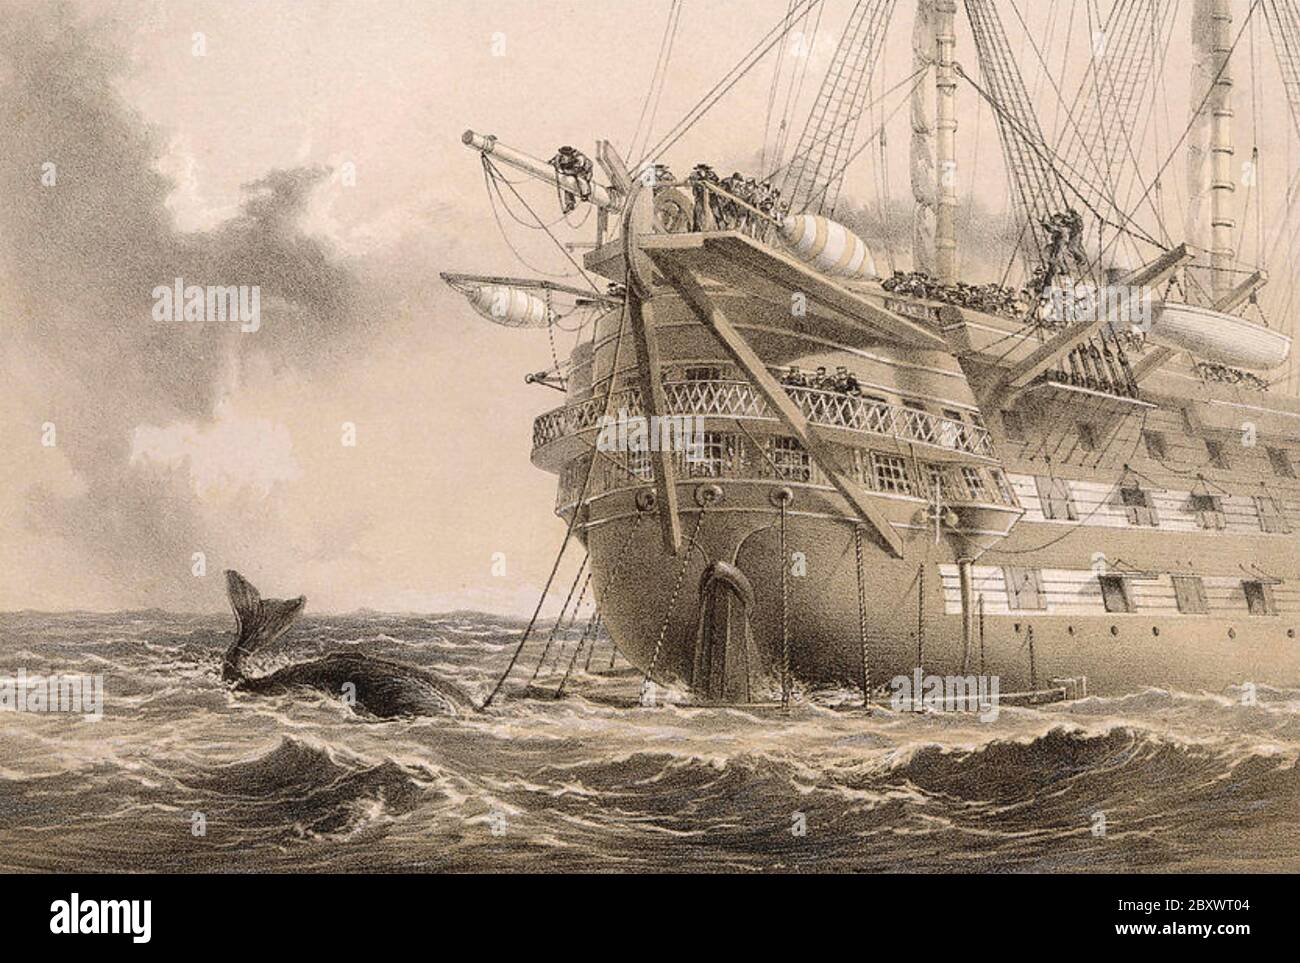 GREAT EASTERN le câble transatlantique s'enclenche le 2 août 1865 Banque D'Images